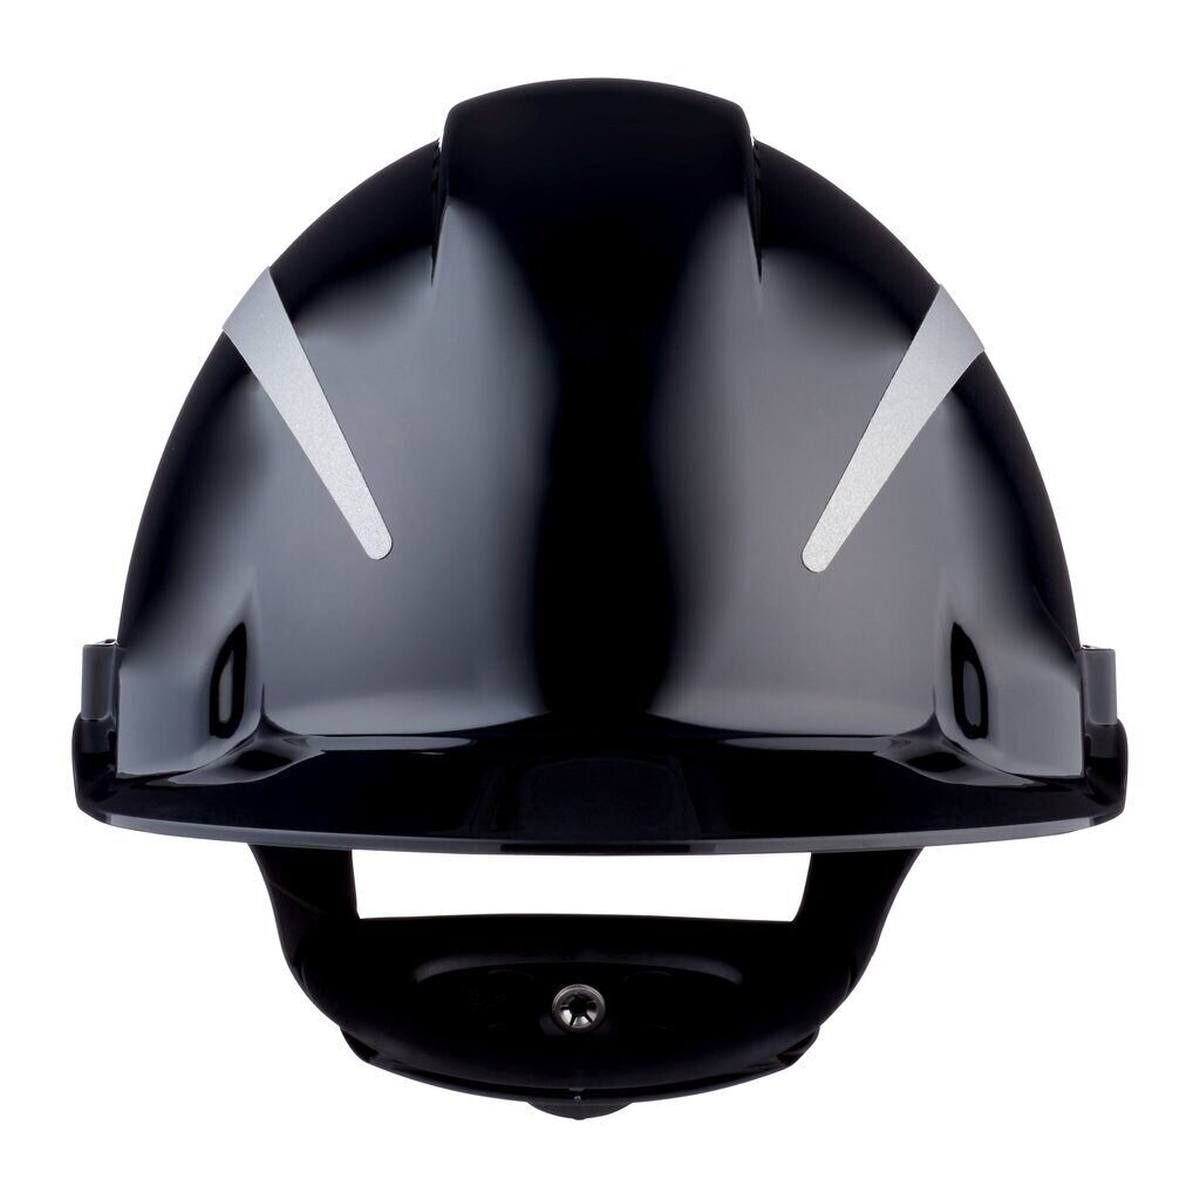 elmetto di sicurezza 3M G3000 con indicatore UV, nero, ABS, chiusura a cricchetto ventilata, fascia antisudore in plastica, adesivo riflettente